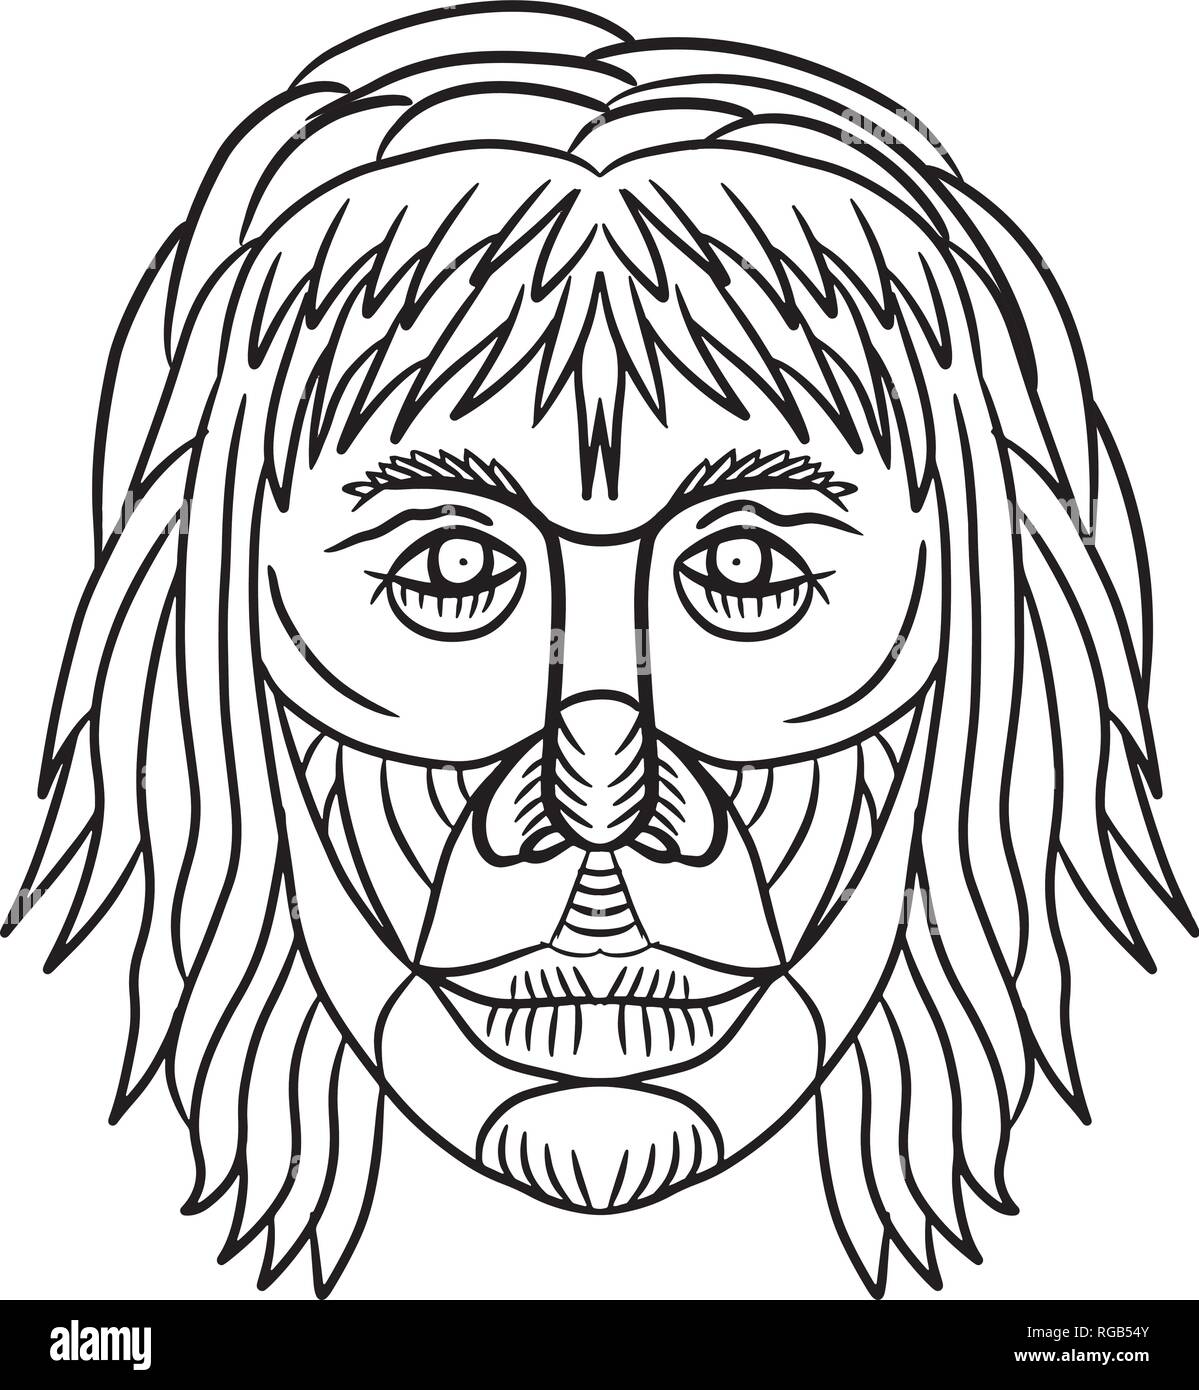 Zeichnung Skizze stil Abbildung eines Homo habilis Gesicht, eines der ersten Mitglieder der Gattung Homo oder frühen primitiven Menschen von vorne gesehen ist auf Stock Vektor